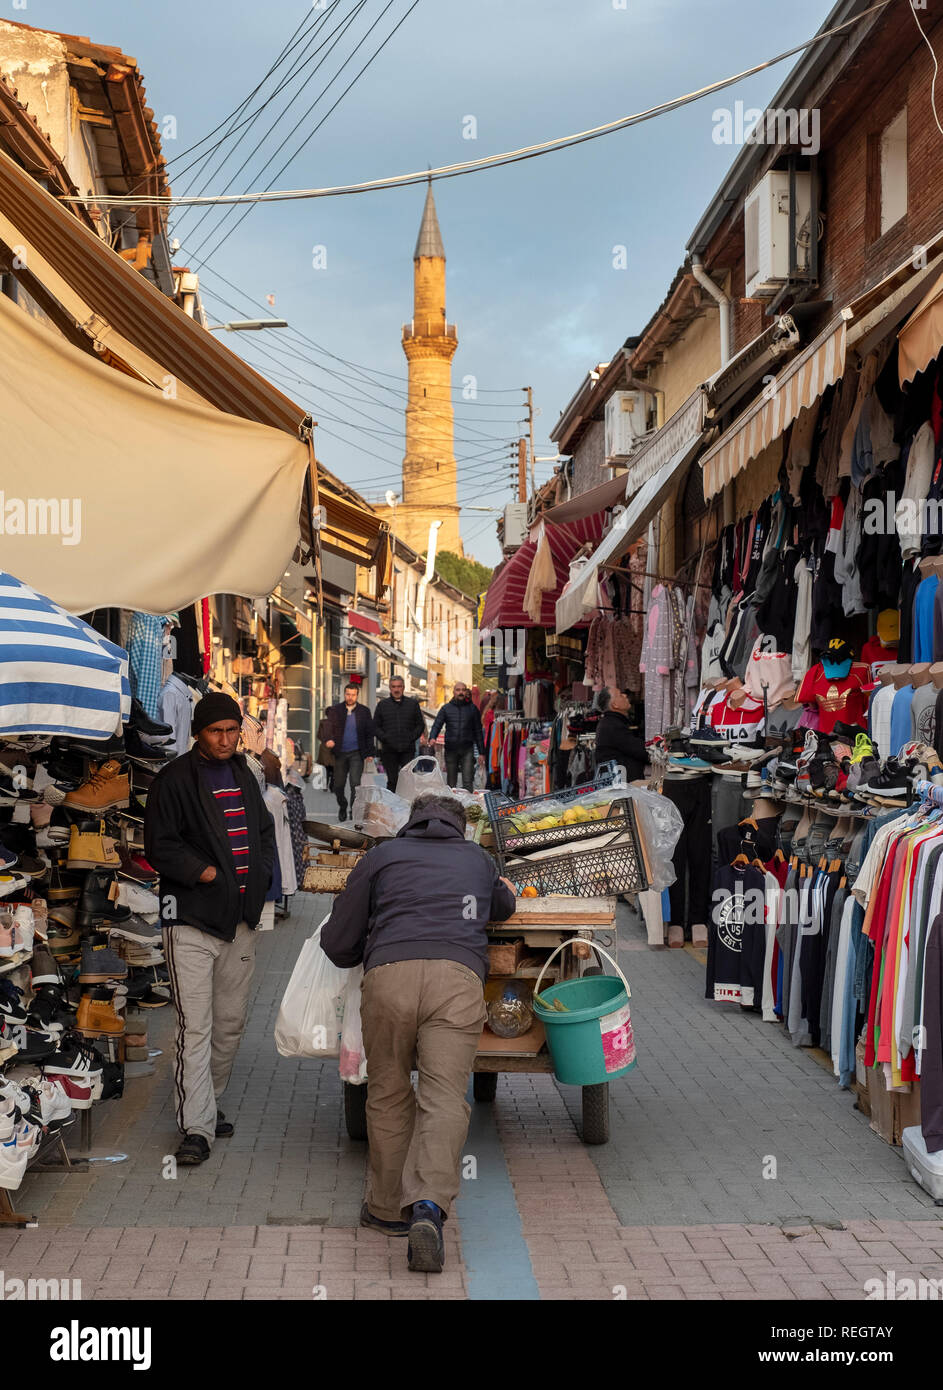 Open-air sul mercato Arasta strada che conduce alla Moschea Selimiye nella parte nord di Nicosia (Lefkosa), Repubblica Turca di Cipro del Nord. Foto Stock